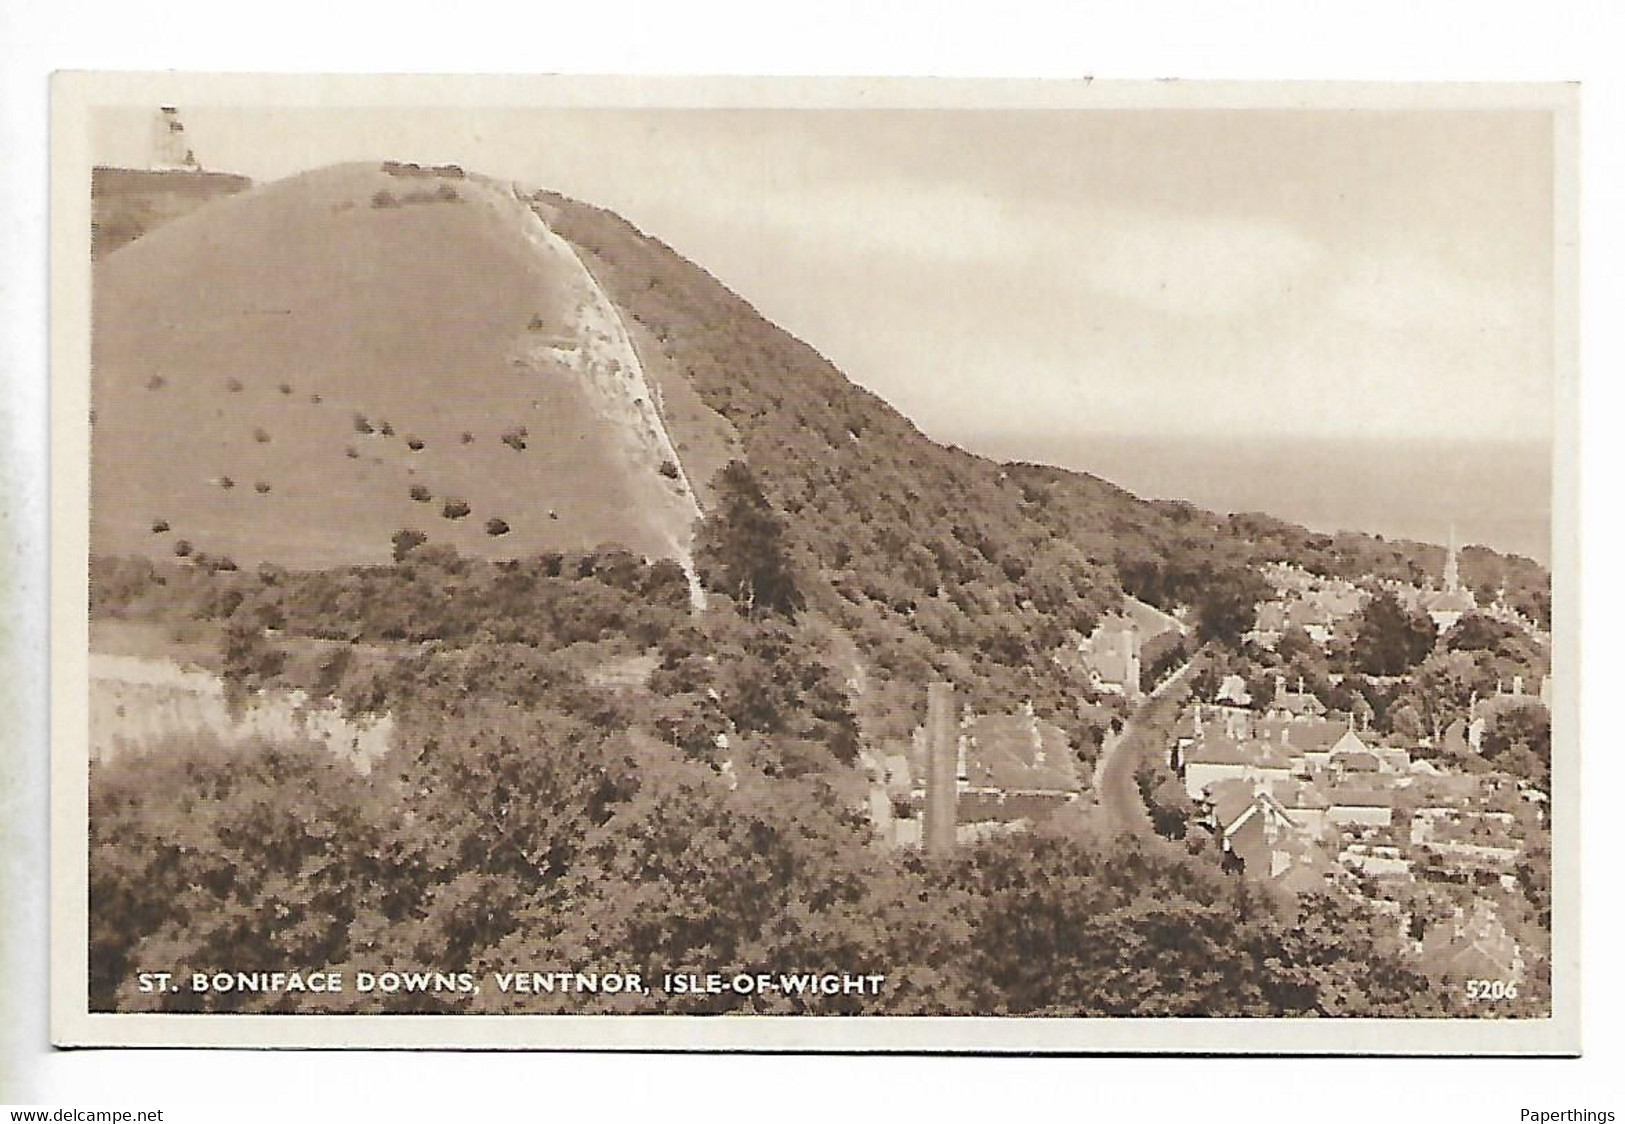 Photogravure Postcard, ST, BONIFACE DOWNS, VENTNOR, Houses, Hills Landscape. - Ventnor